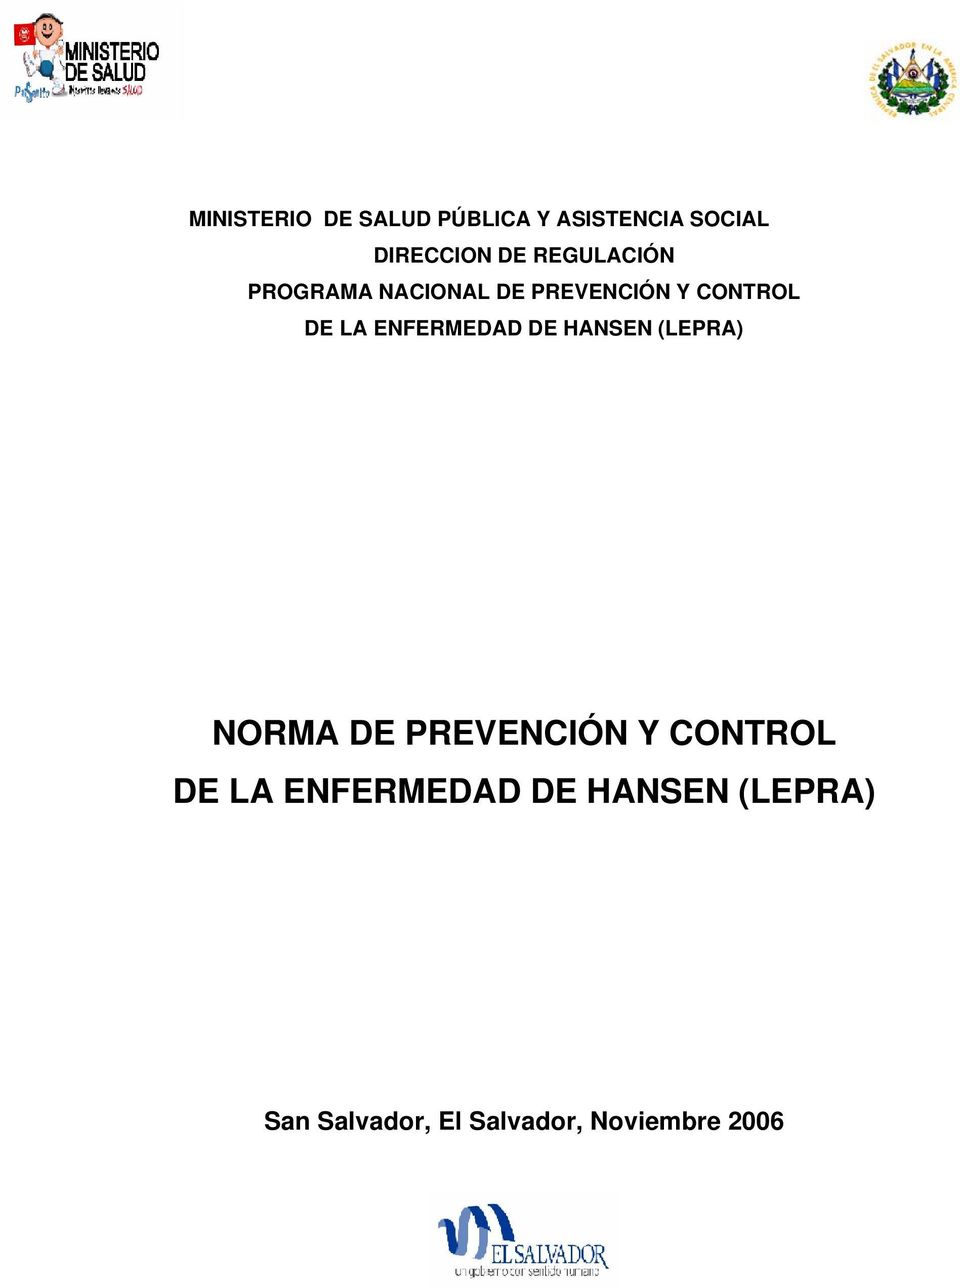 ENFERMEDAD DE HANSEN (LEPRA) NORMA DE PREVENCIÓN Y CONTROL DE